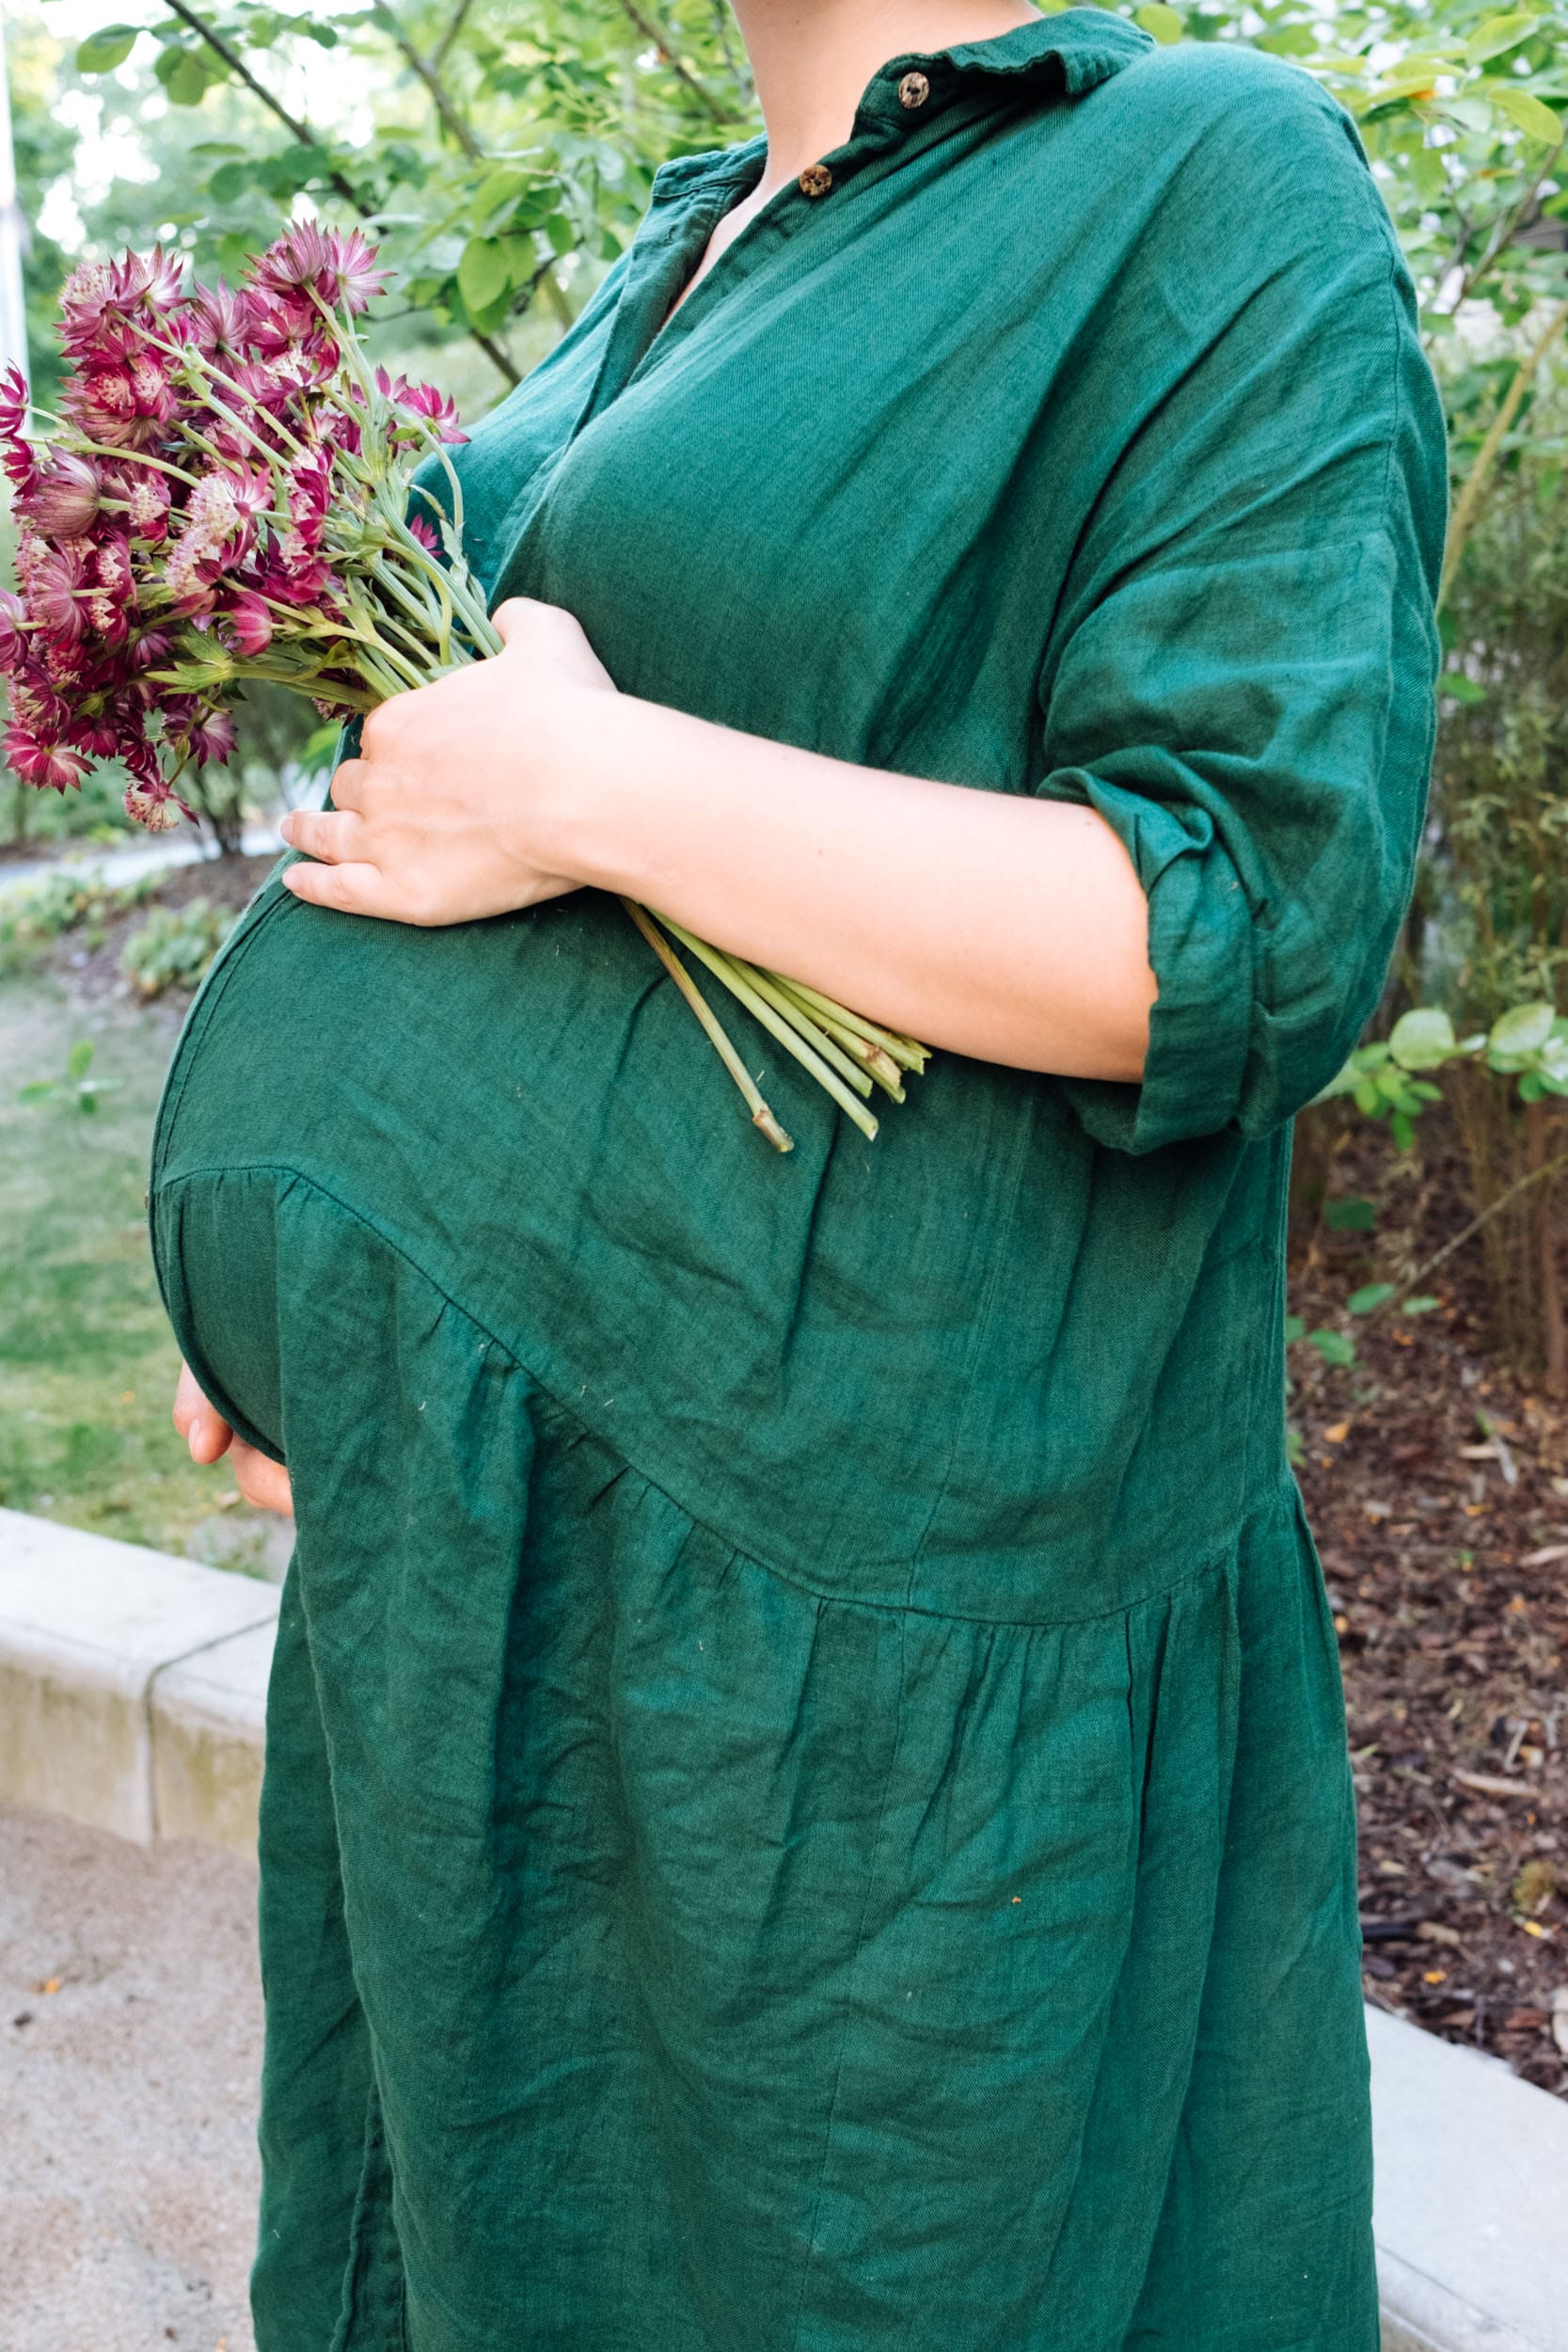 Schwangerschaftsupdate 28. & 29. SSW | Schwanger mit dem zweiten Kind | Babybauch